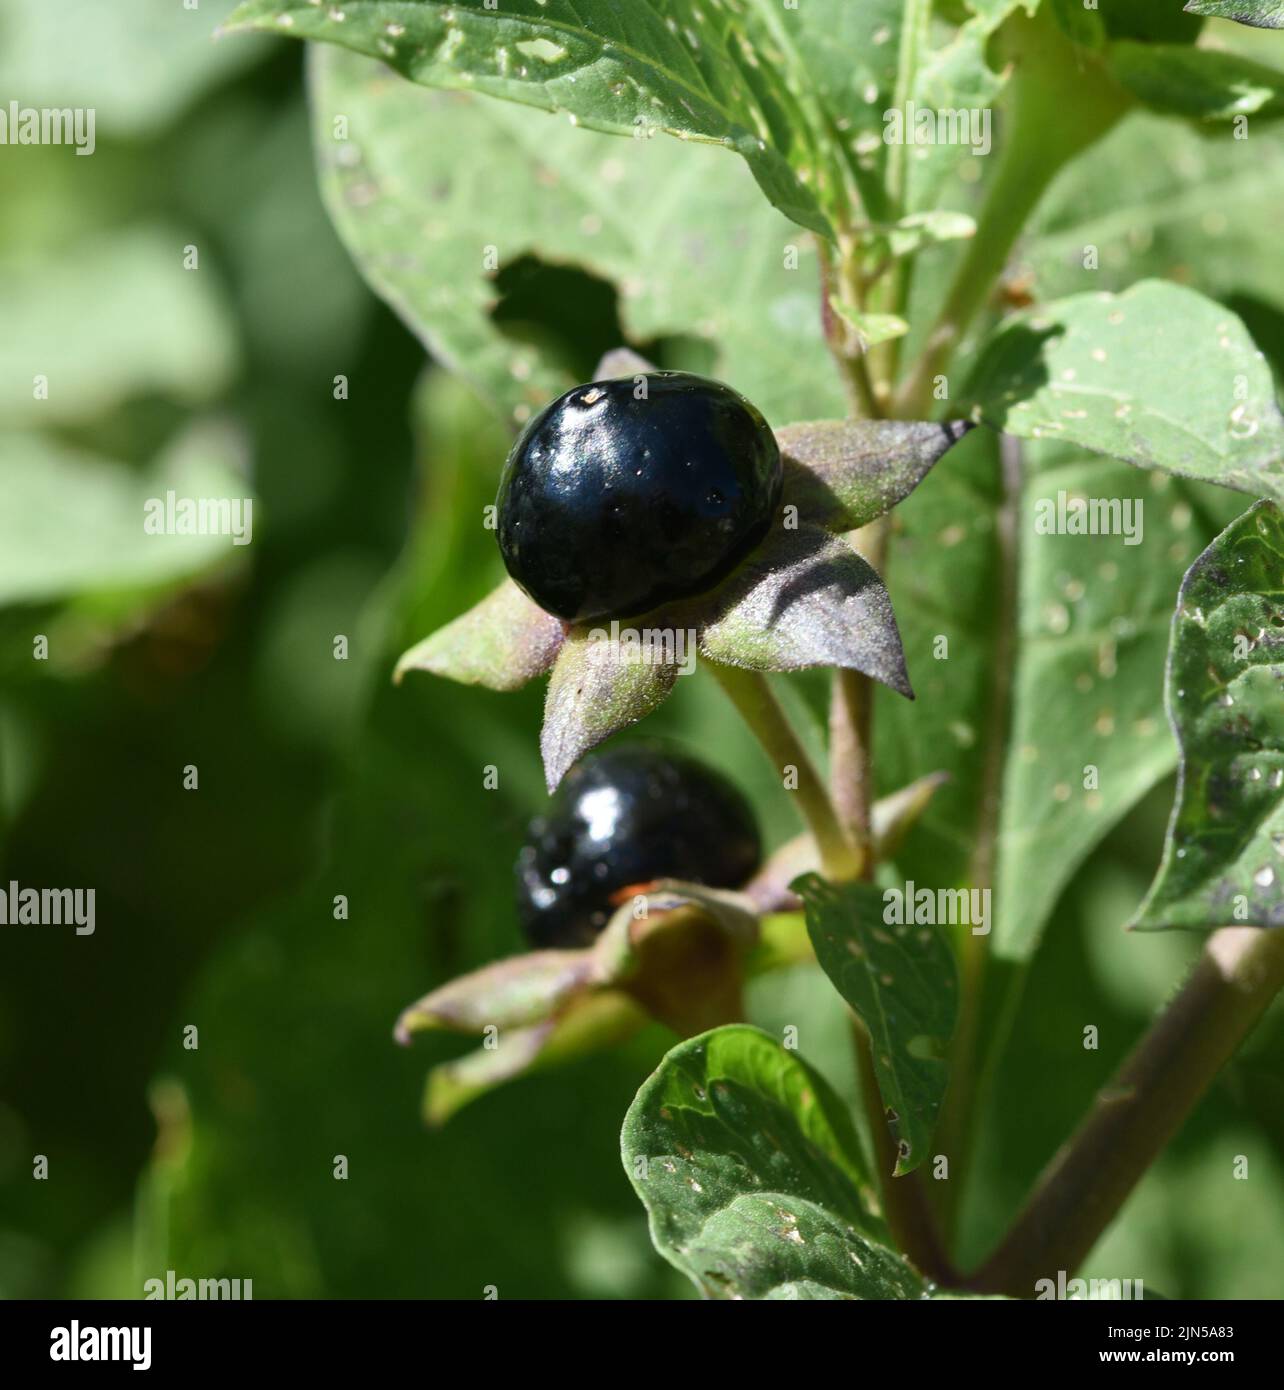 Tollkirsche, Atropa Bella-donna, hat schwarze Beeren und ist eine Gift-und Heilpflanze. Deadly Nightshade, Atropa bella-donna, has black berries and i Stock Photo